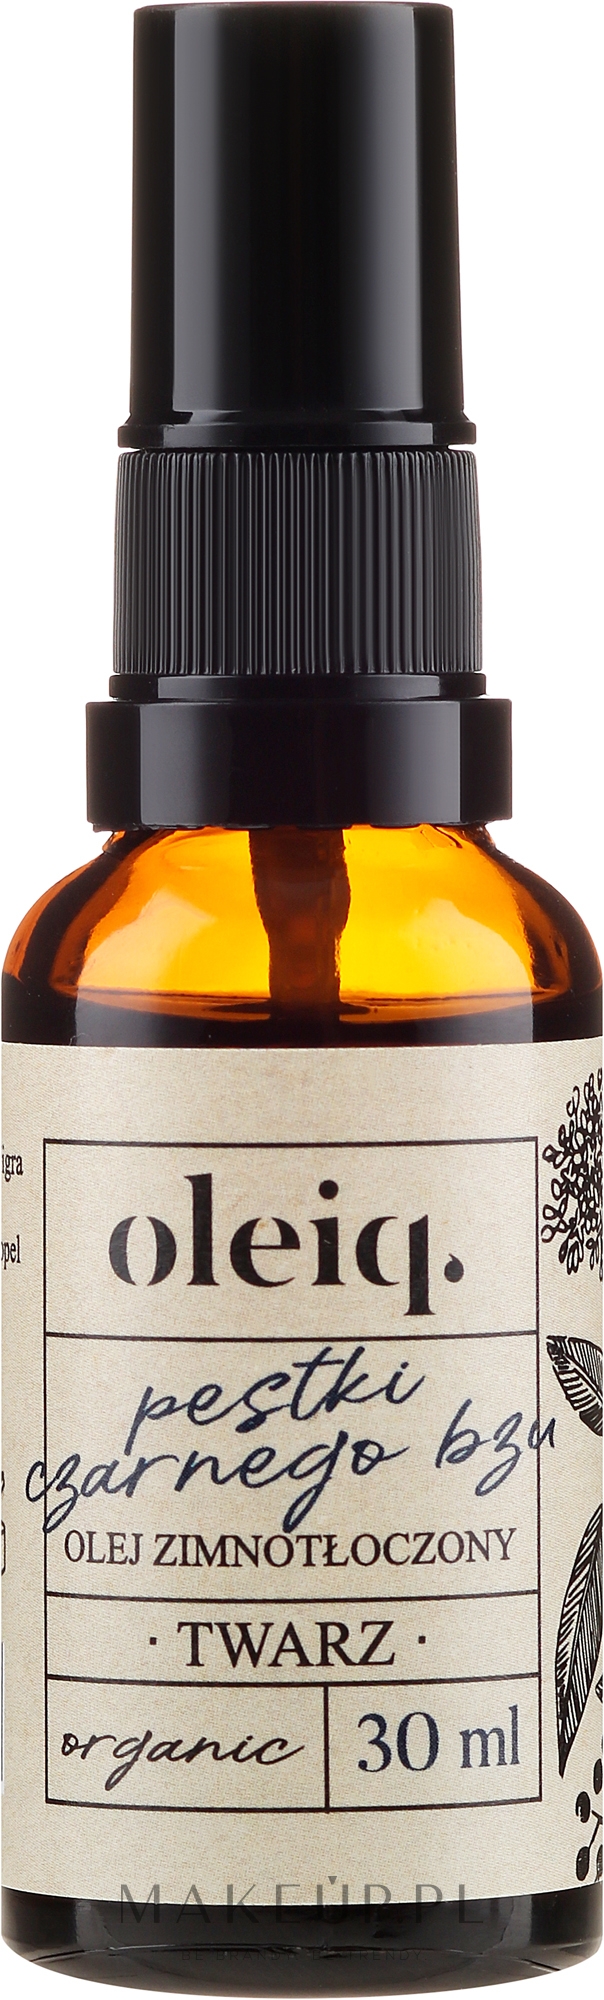 Olej zimnotłoczony z pestek czarnego bzu do twarzy - Oleiq — Zdjęcie 30 ml